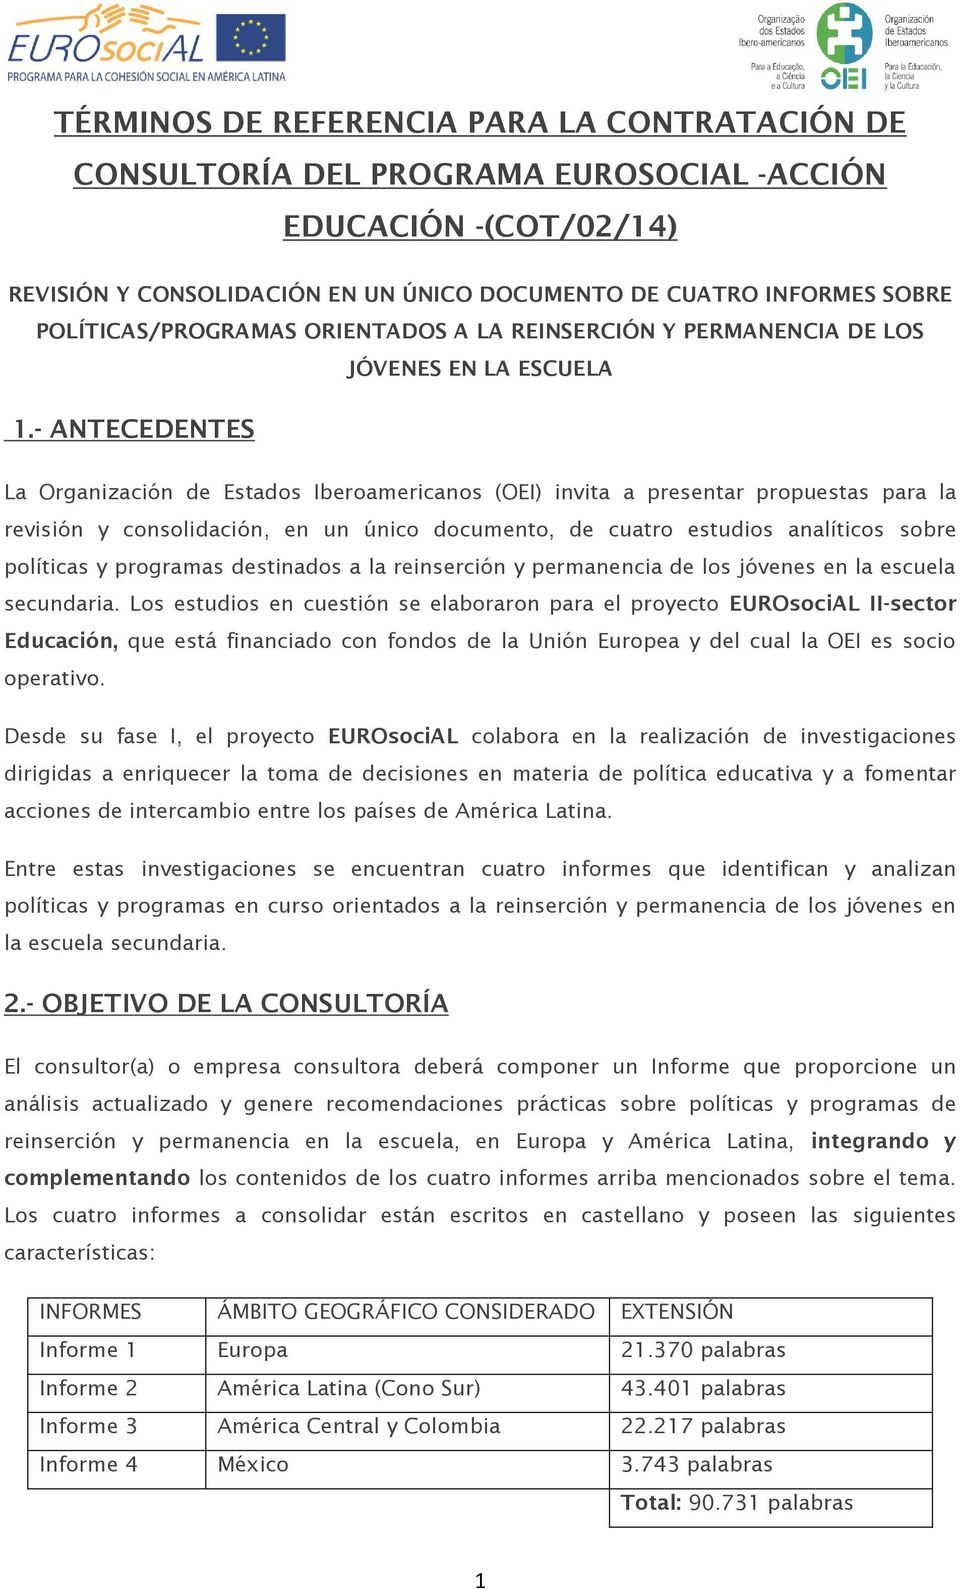 - ANTECEDENTES La Organización de Estados Iberoamericanos (OEI) invita a presentar propuestas para la revisión y consolidación, en un único documento, de cuatro estudios analíticos sobre políticas y